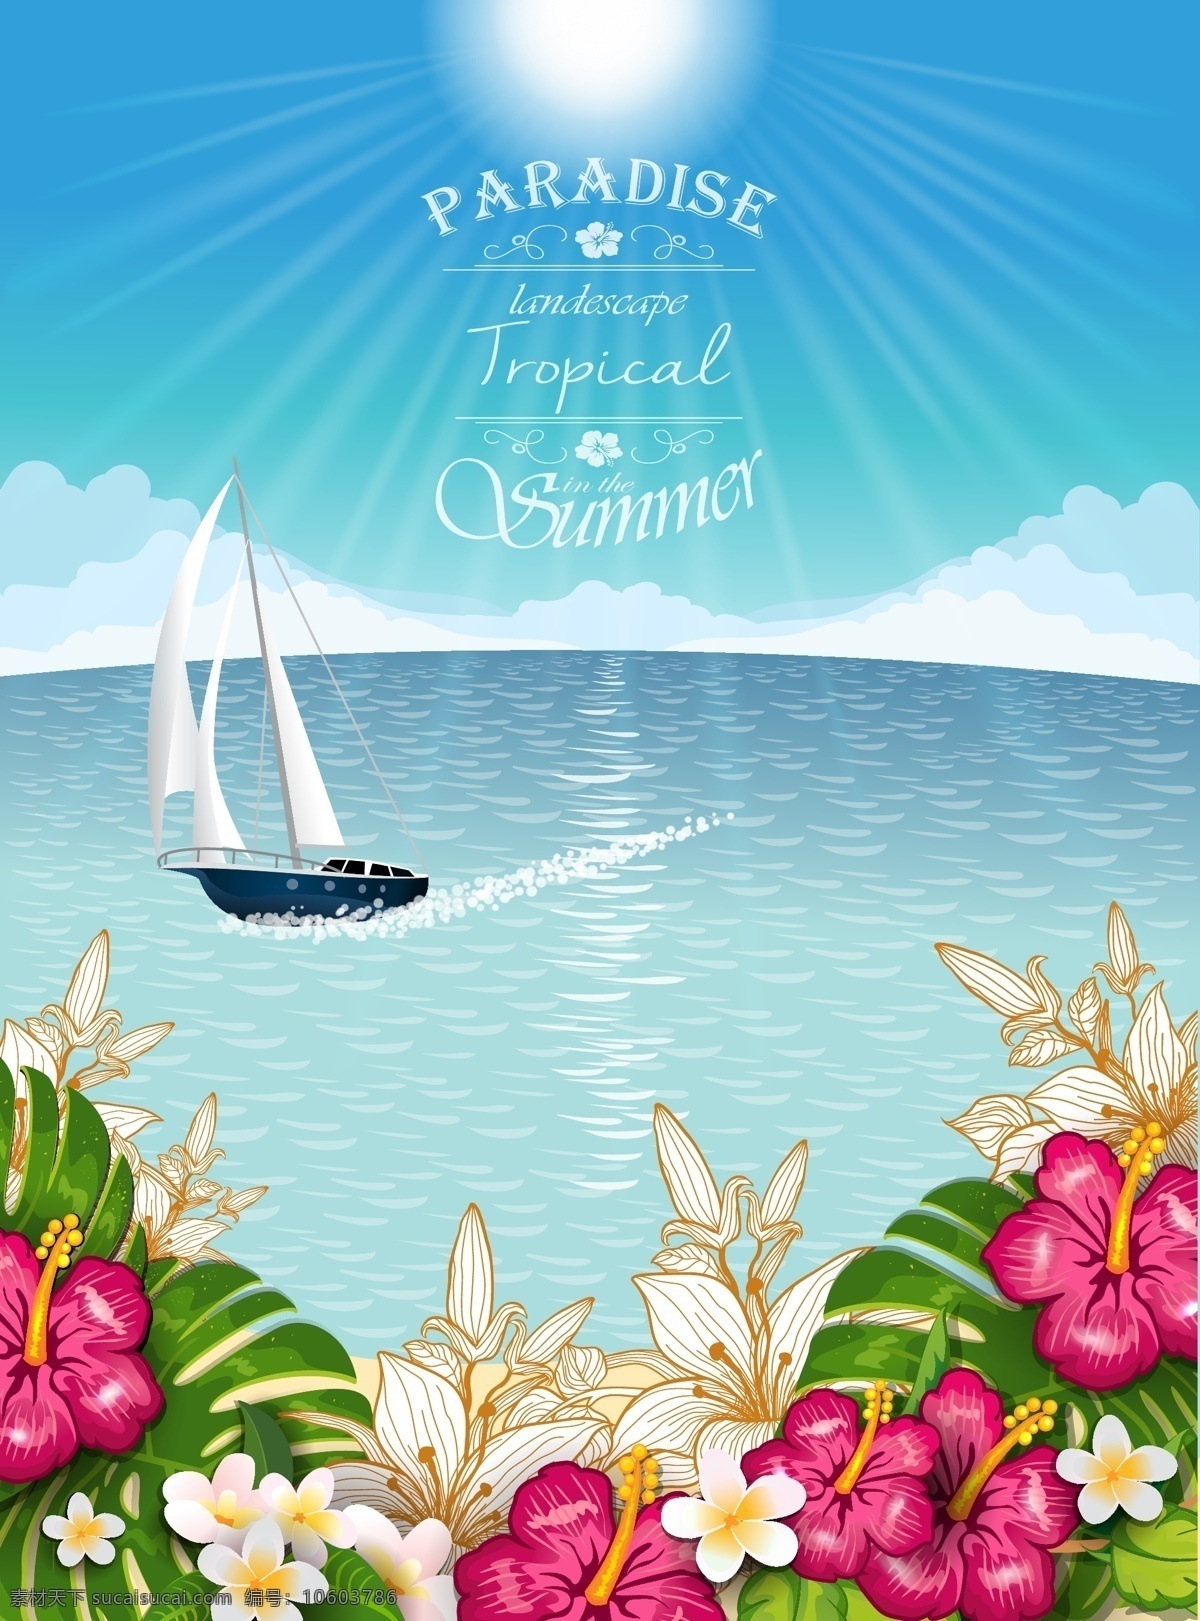 美丽 清新 大海 风景 插画 白云 帆船 花卉 蓝天 阳光 植物